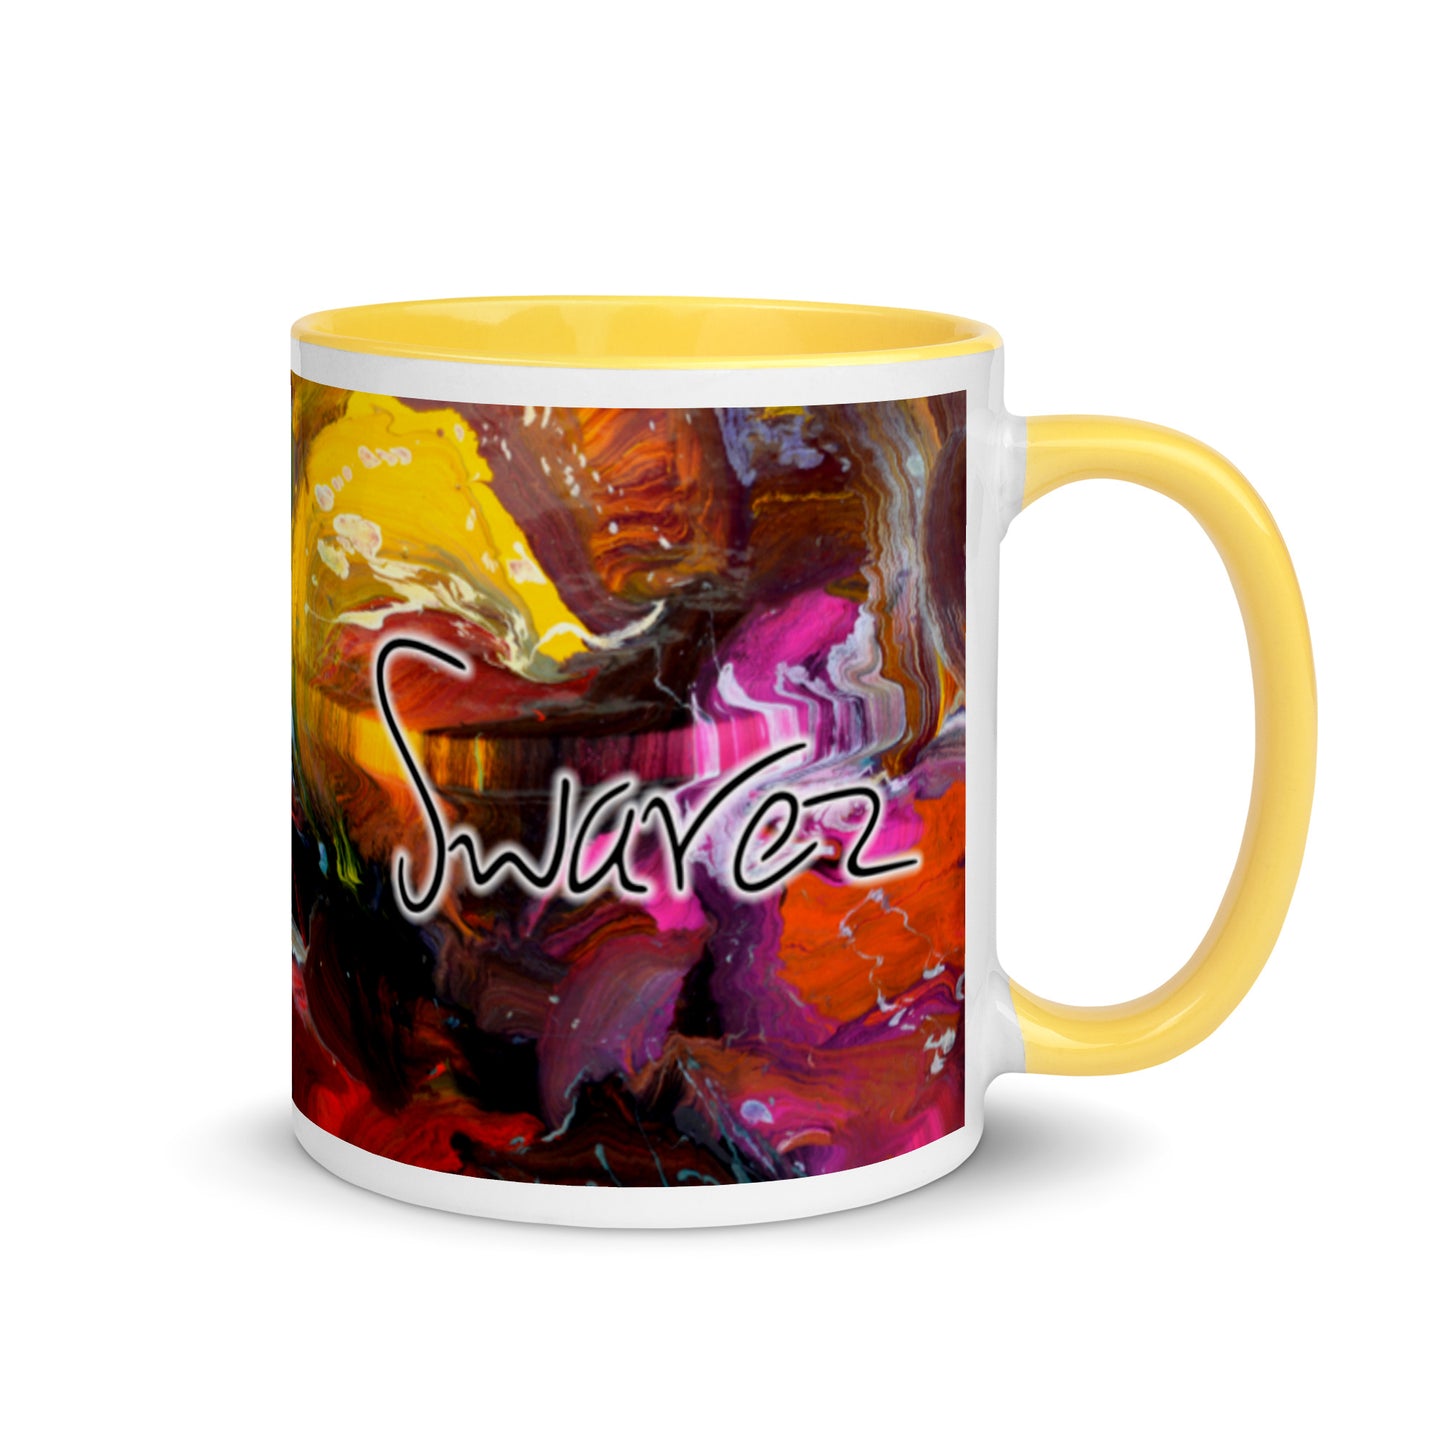 Mug with Color Inside - Thunderstruck design